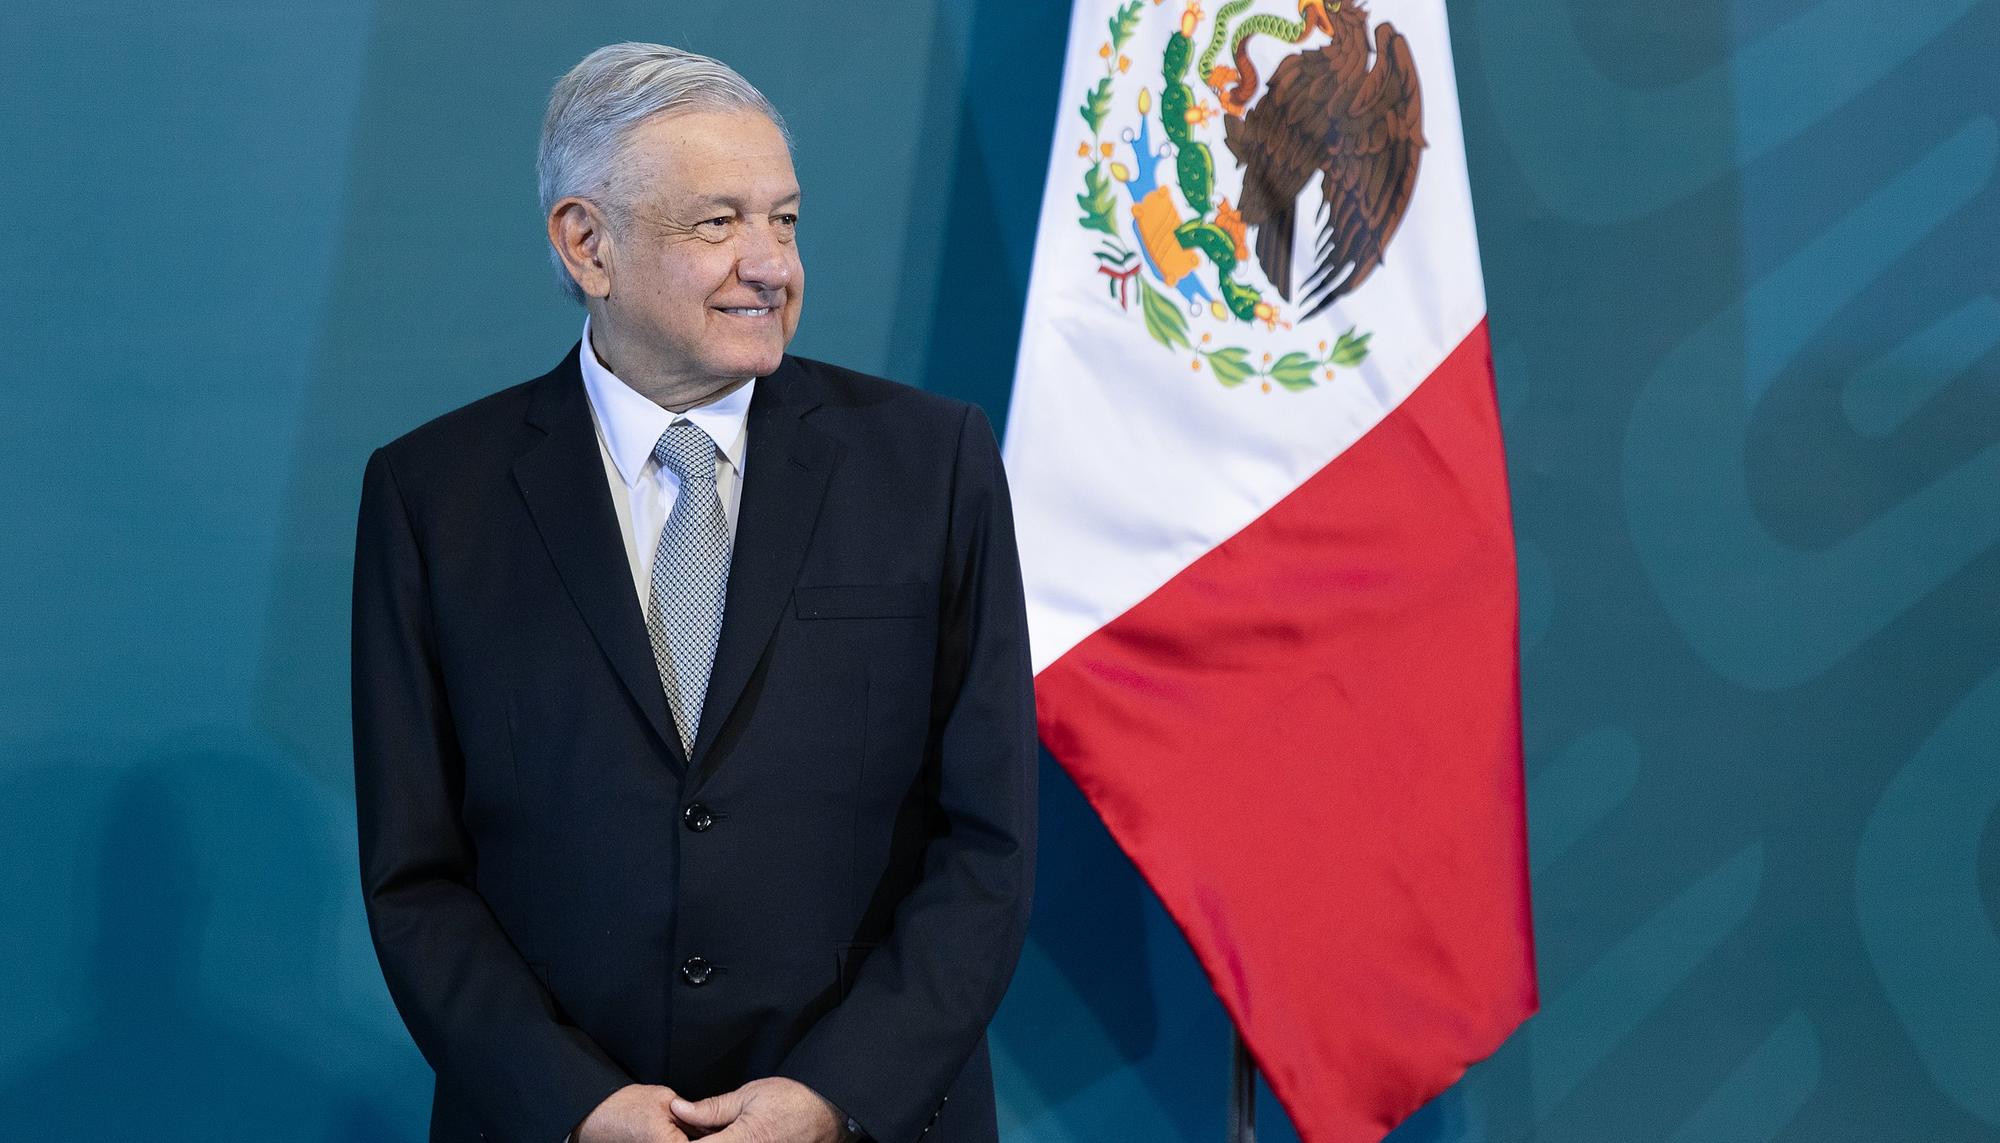 El líder de Morena, Andrés Manuel López Obrador, asumió la presidencia de México el 1 de diciembre de 2018.